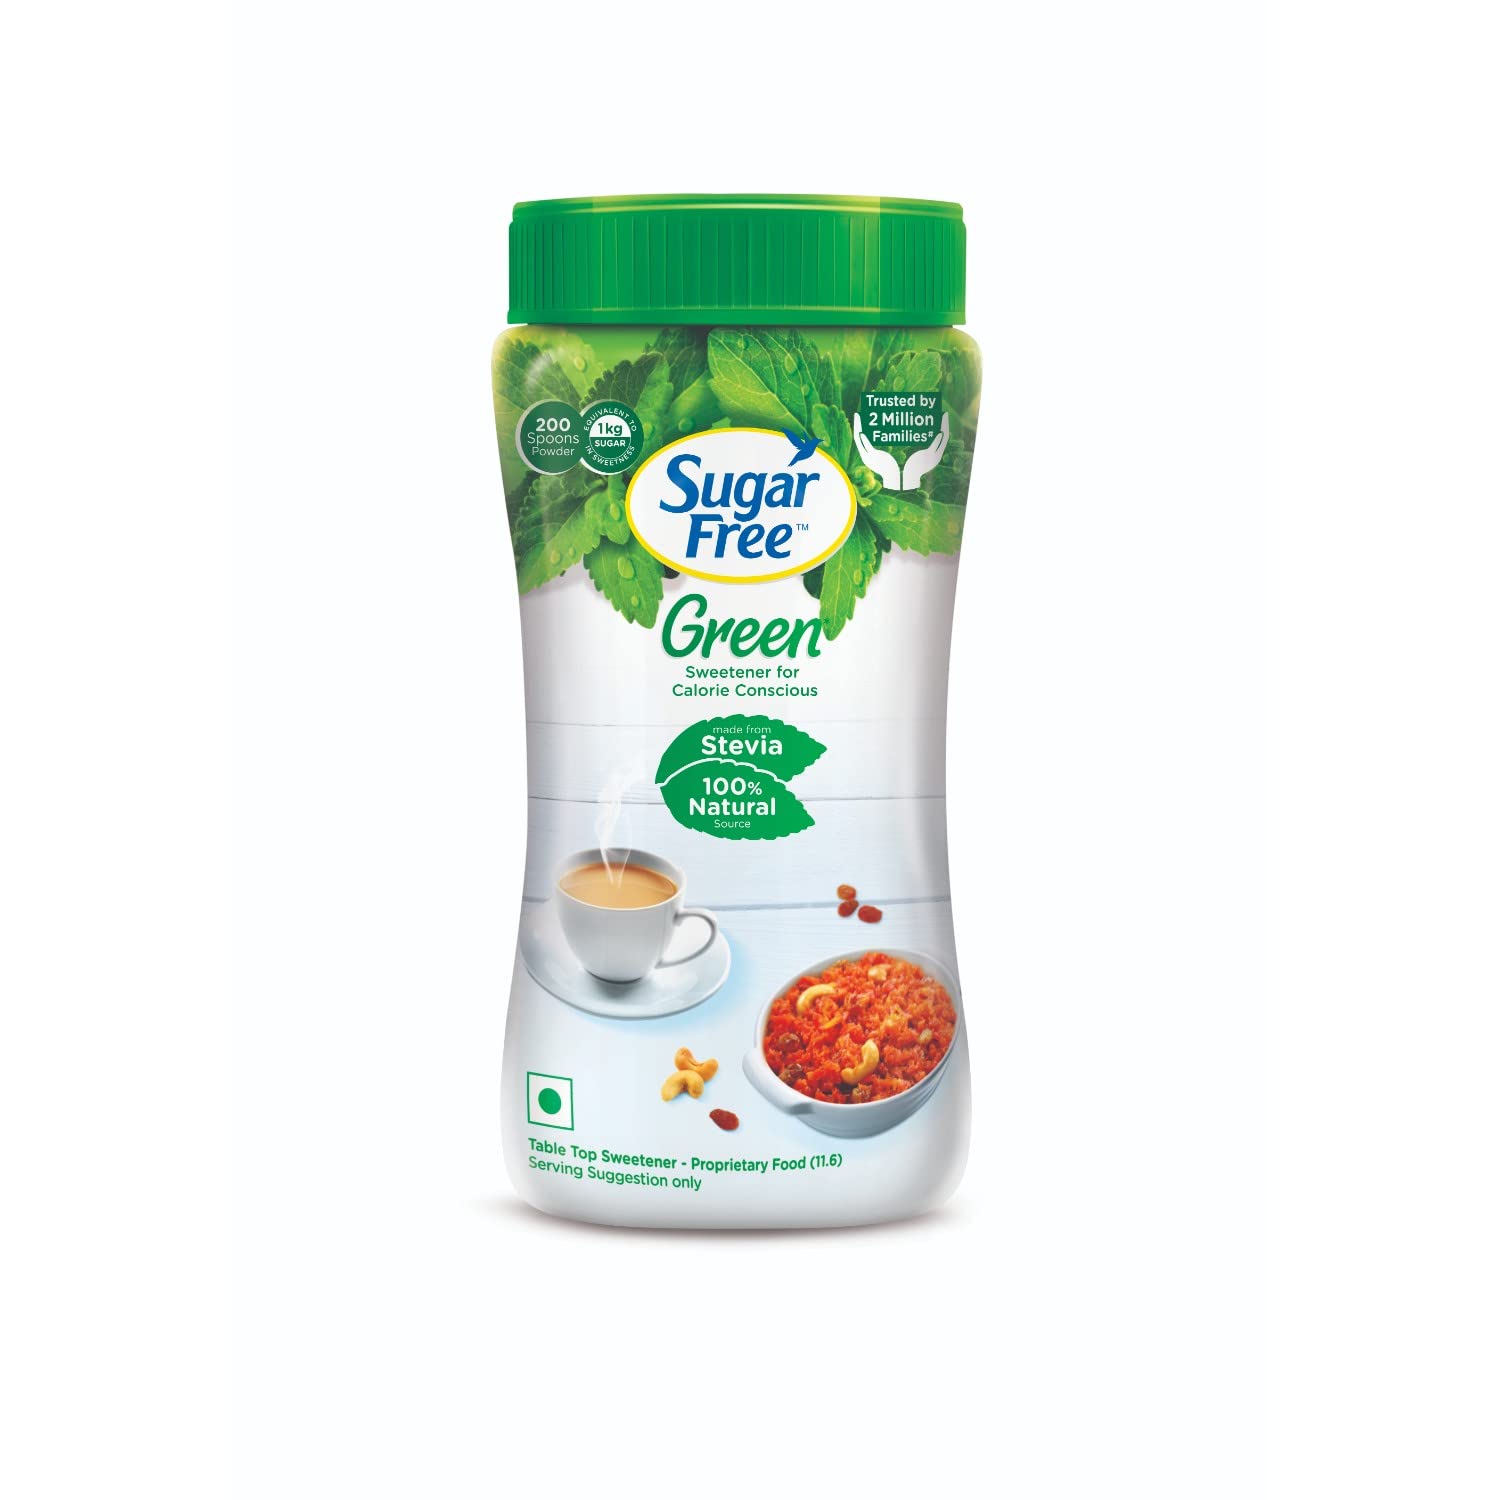 Sugar Free Green Natural Stevia (200 g)